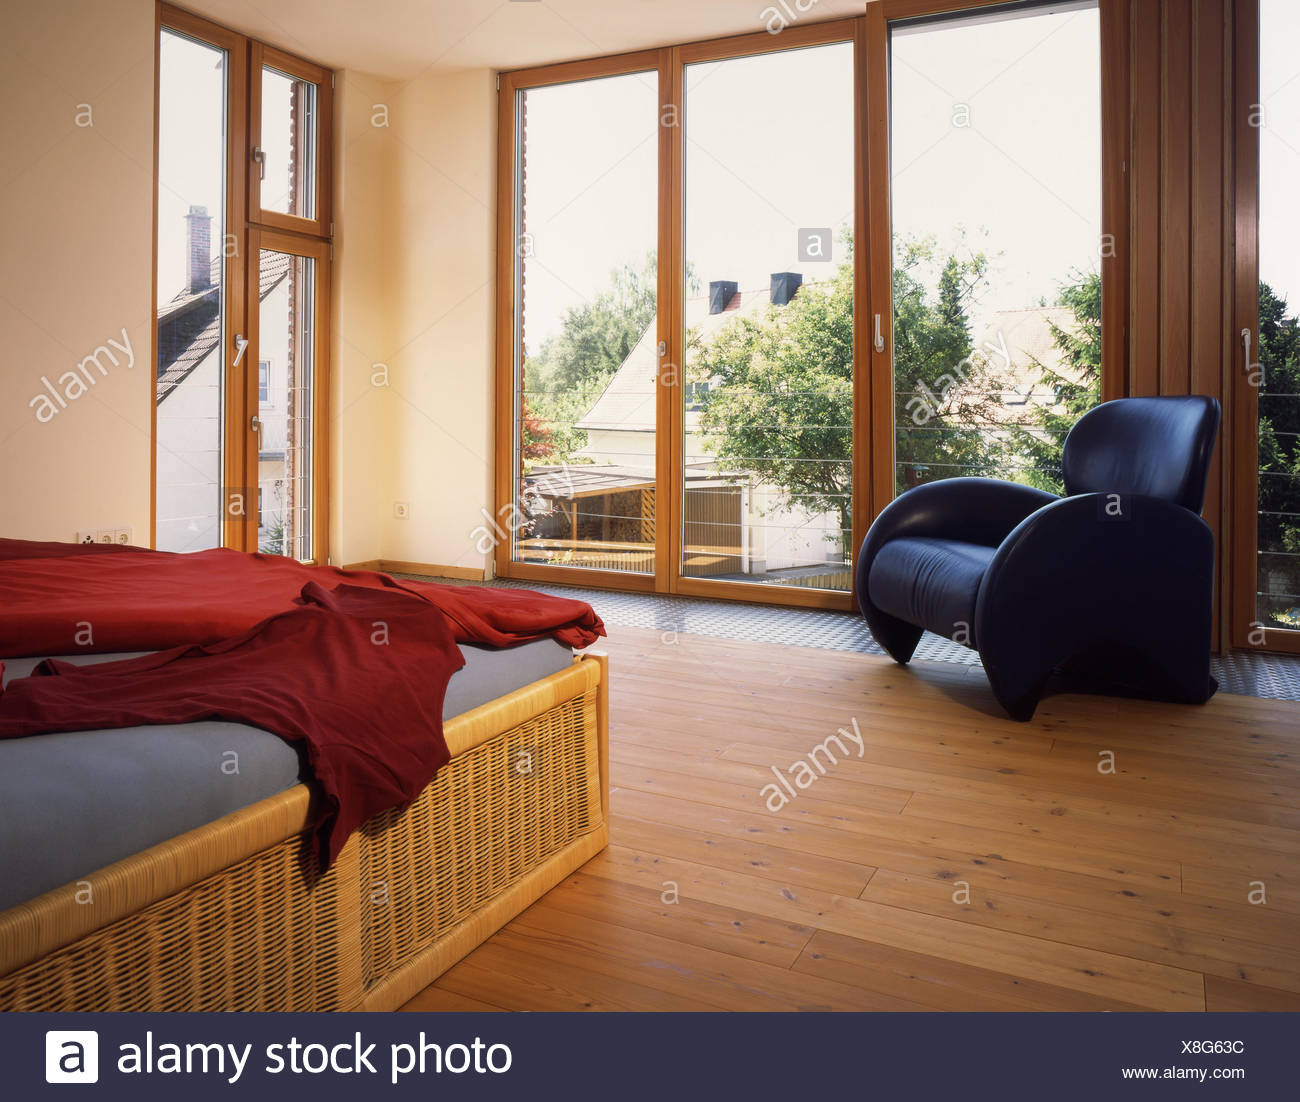 Bedroom Window Bed View Wooden Floor Wicker Piece Of